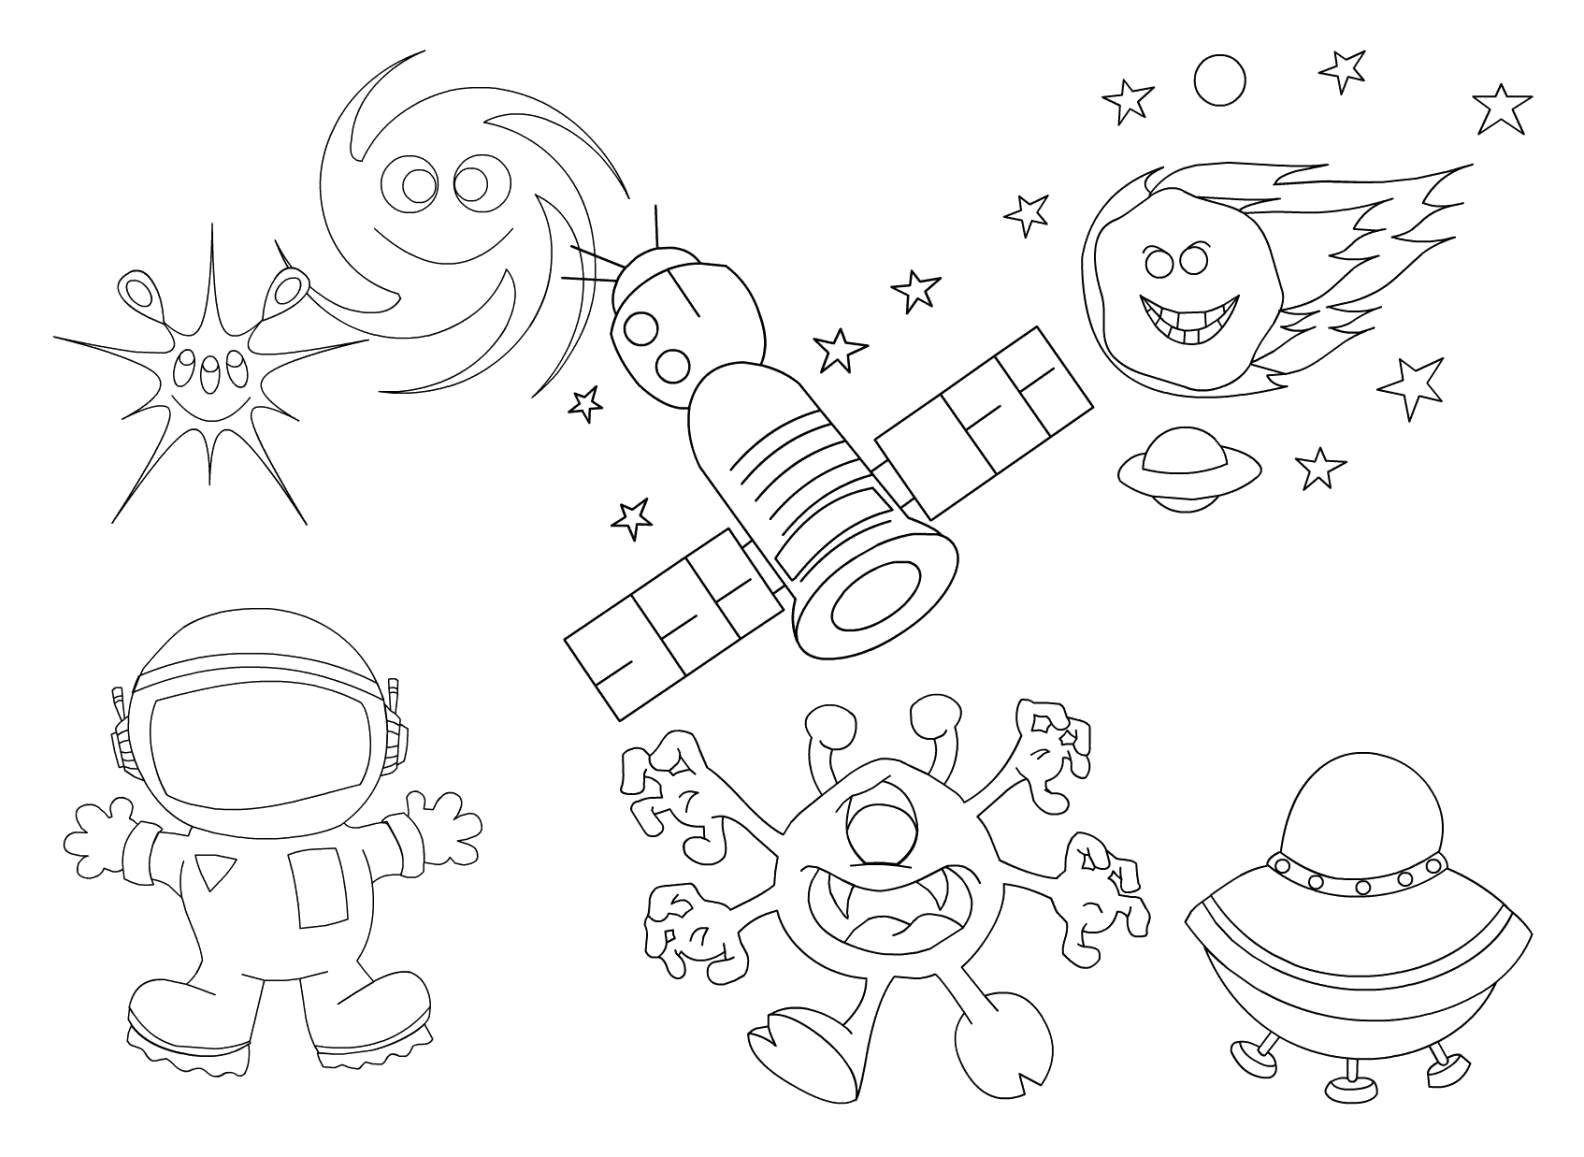 Опис: розмальовки  Космонавт, зірки, супутник, інопланетянин, космічний корабель, комети в космосі. Категорія: космос. Теги:  - Космос, планета, Всесвіт, Галактика, космонавт, інопланетянин, зірки.